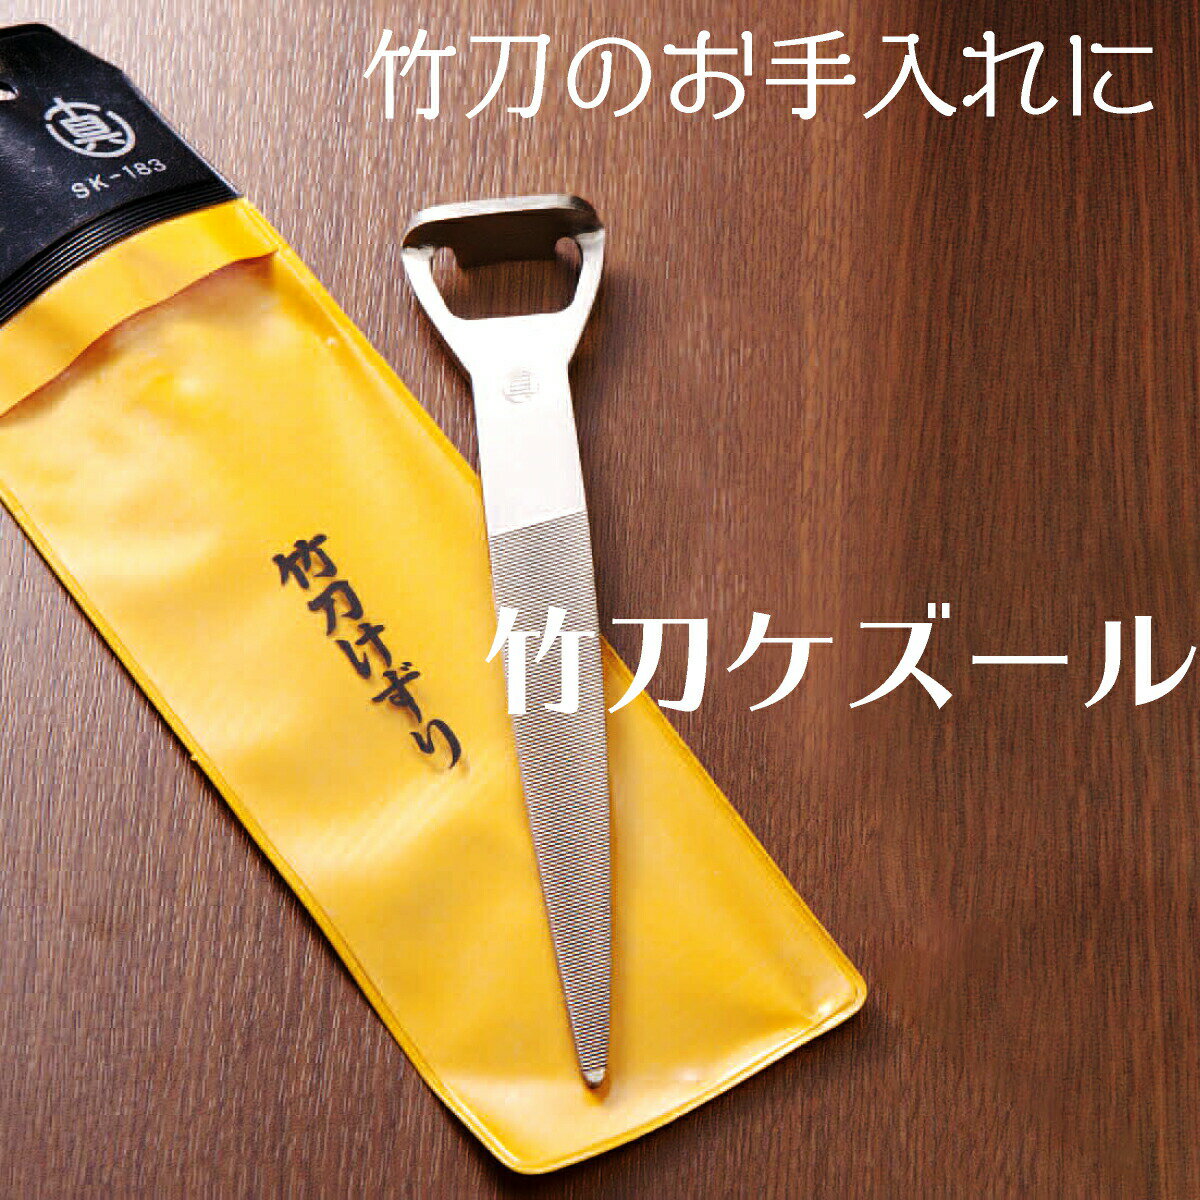 竹刀 メンテナンス 竹刀削り『 ケズール 』 お手入れ けずり ヤスリ ササクレ 栓抜き型